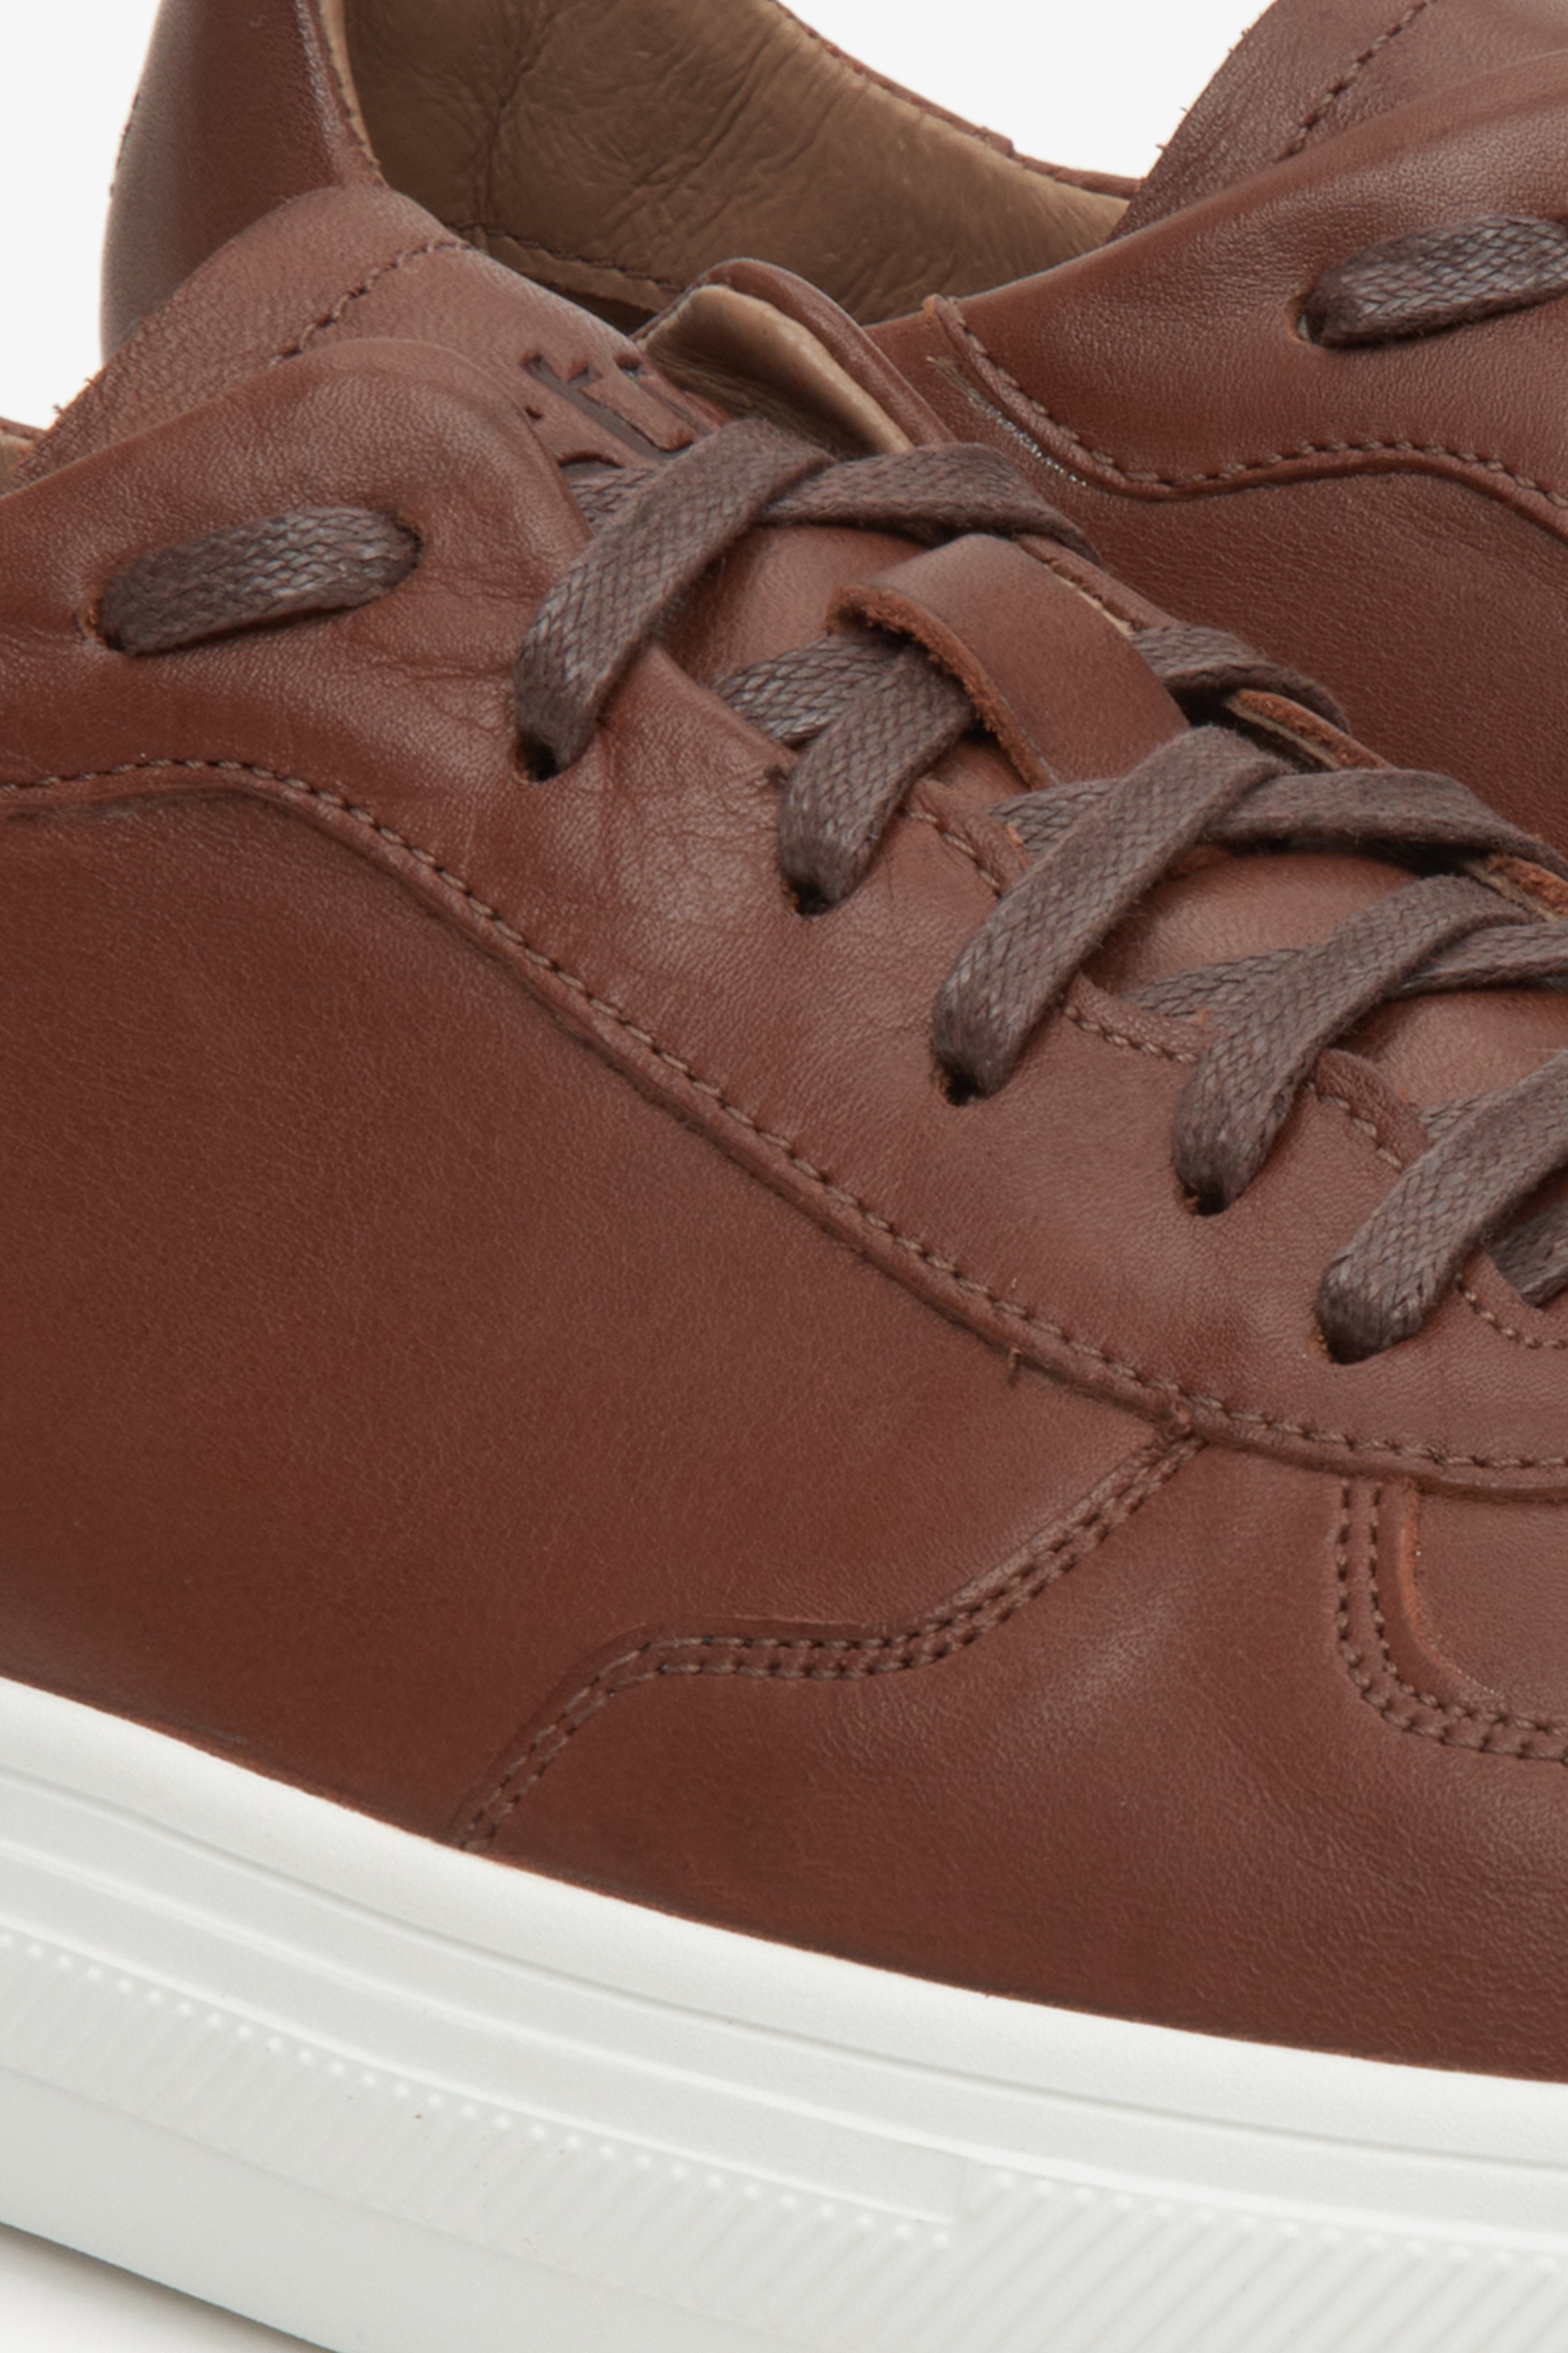 Wiosenne sneakersy męskie Estro w kolorze brązowym - zbliżenie na system sznurowań i przeszyć.